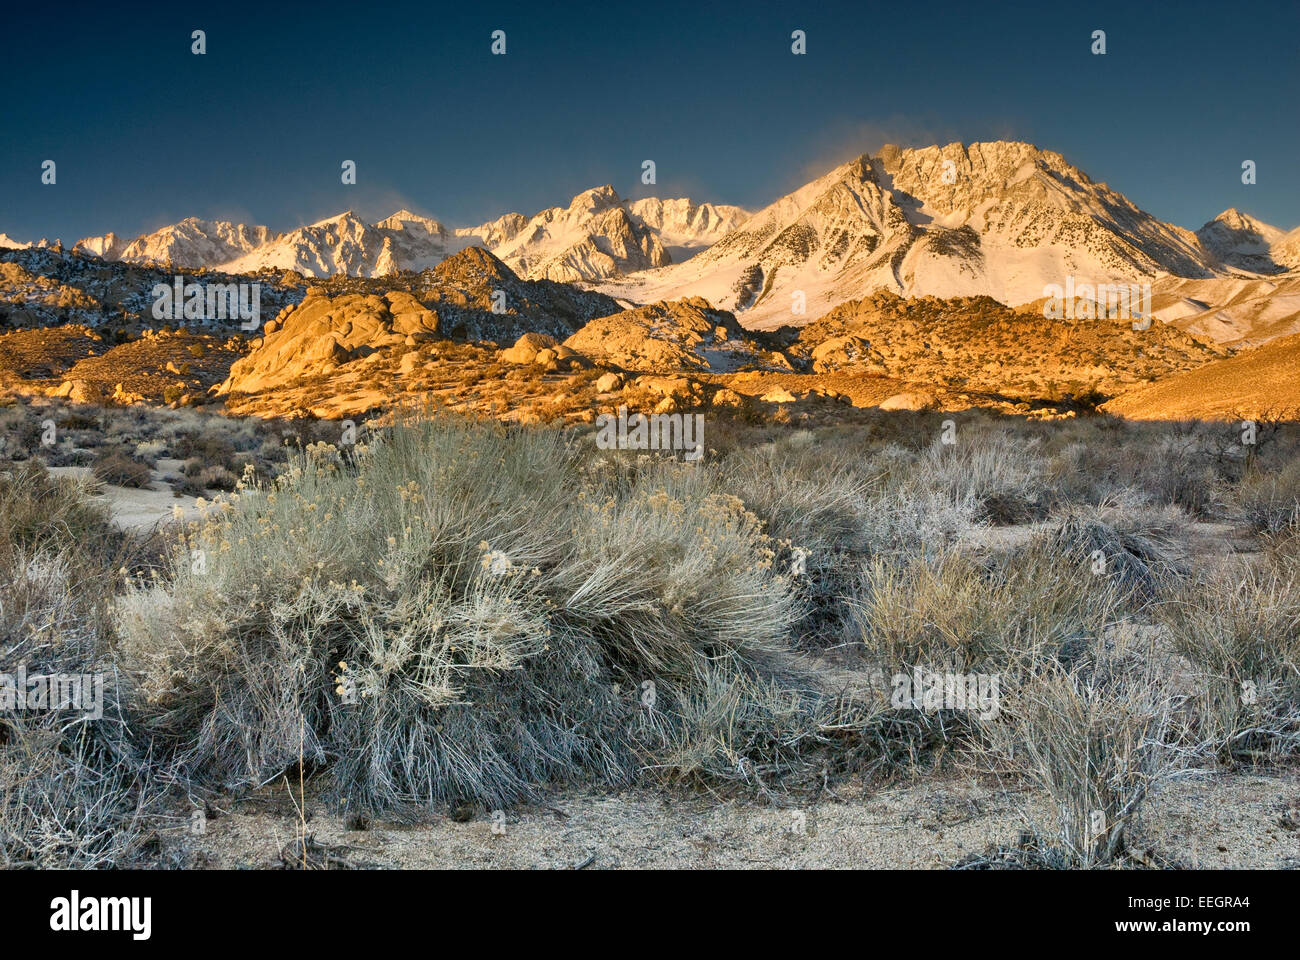 Mt Humphreys ed il bacino Mtn in Eastern Sierra Nevada a sunrise in inverno, rabbitbush, latticello paese, CALIFORNIA, STATI UNITI D'AMERICA Foto Stock